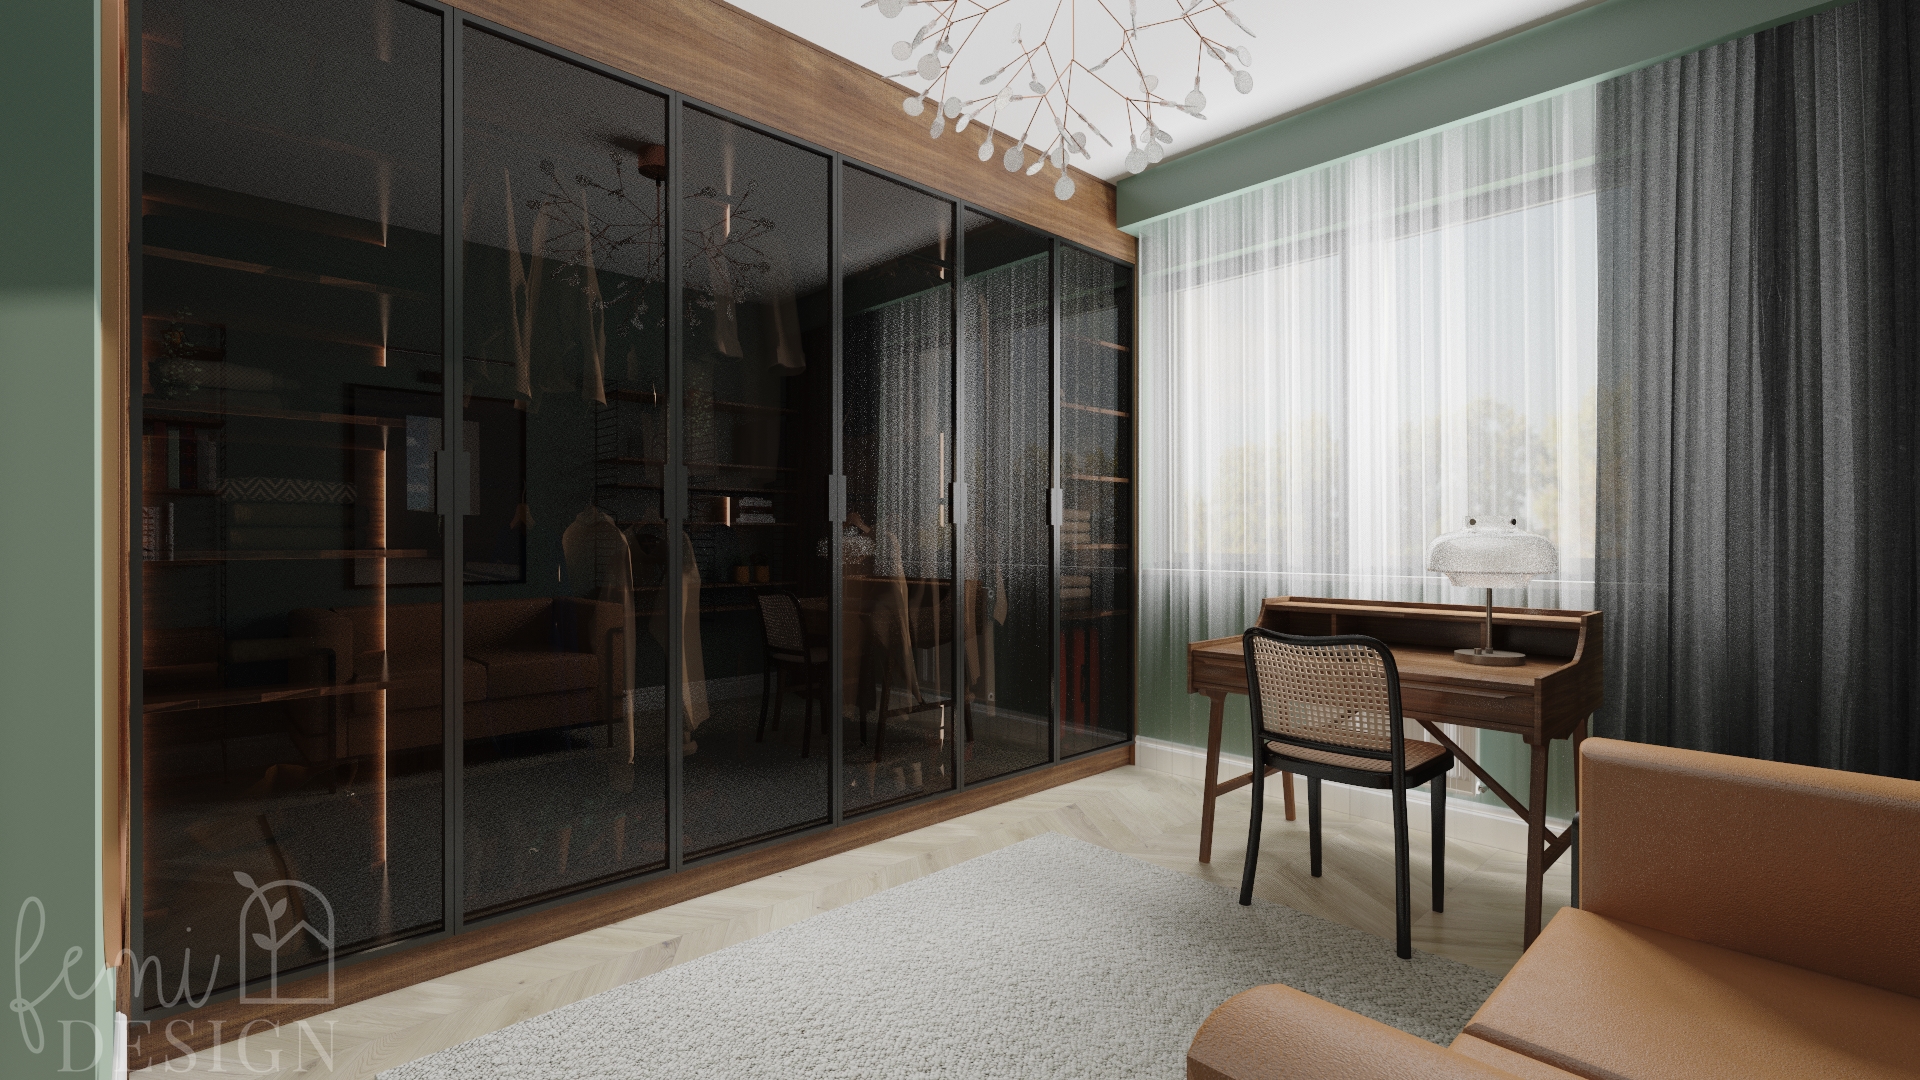 szafa z drzwiami szklanymi, drewniane biurko, szkalne drzwi, skórzana sofa, podłoga jodełka, zielone ściany, ciemne drewno